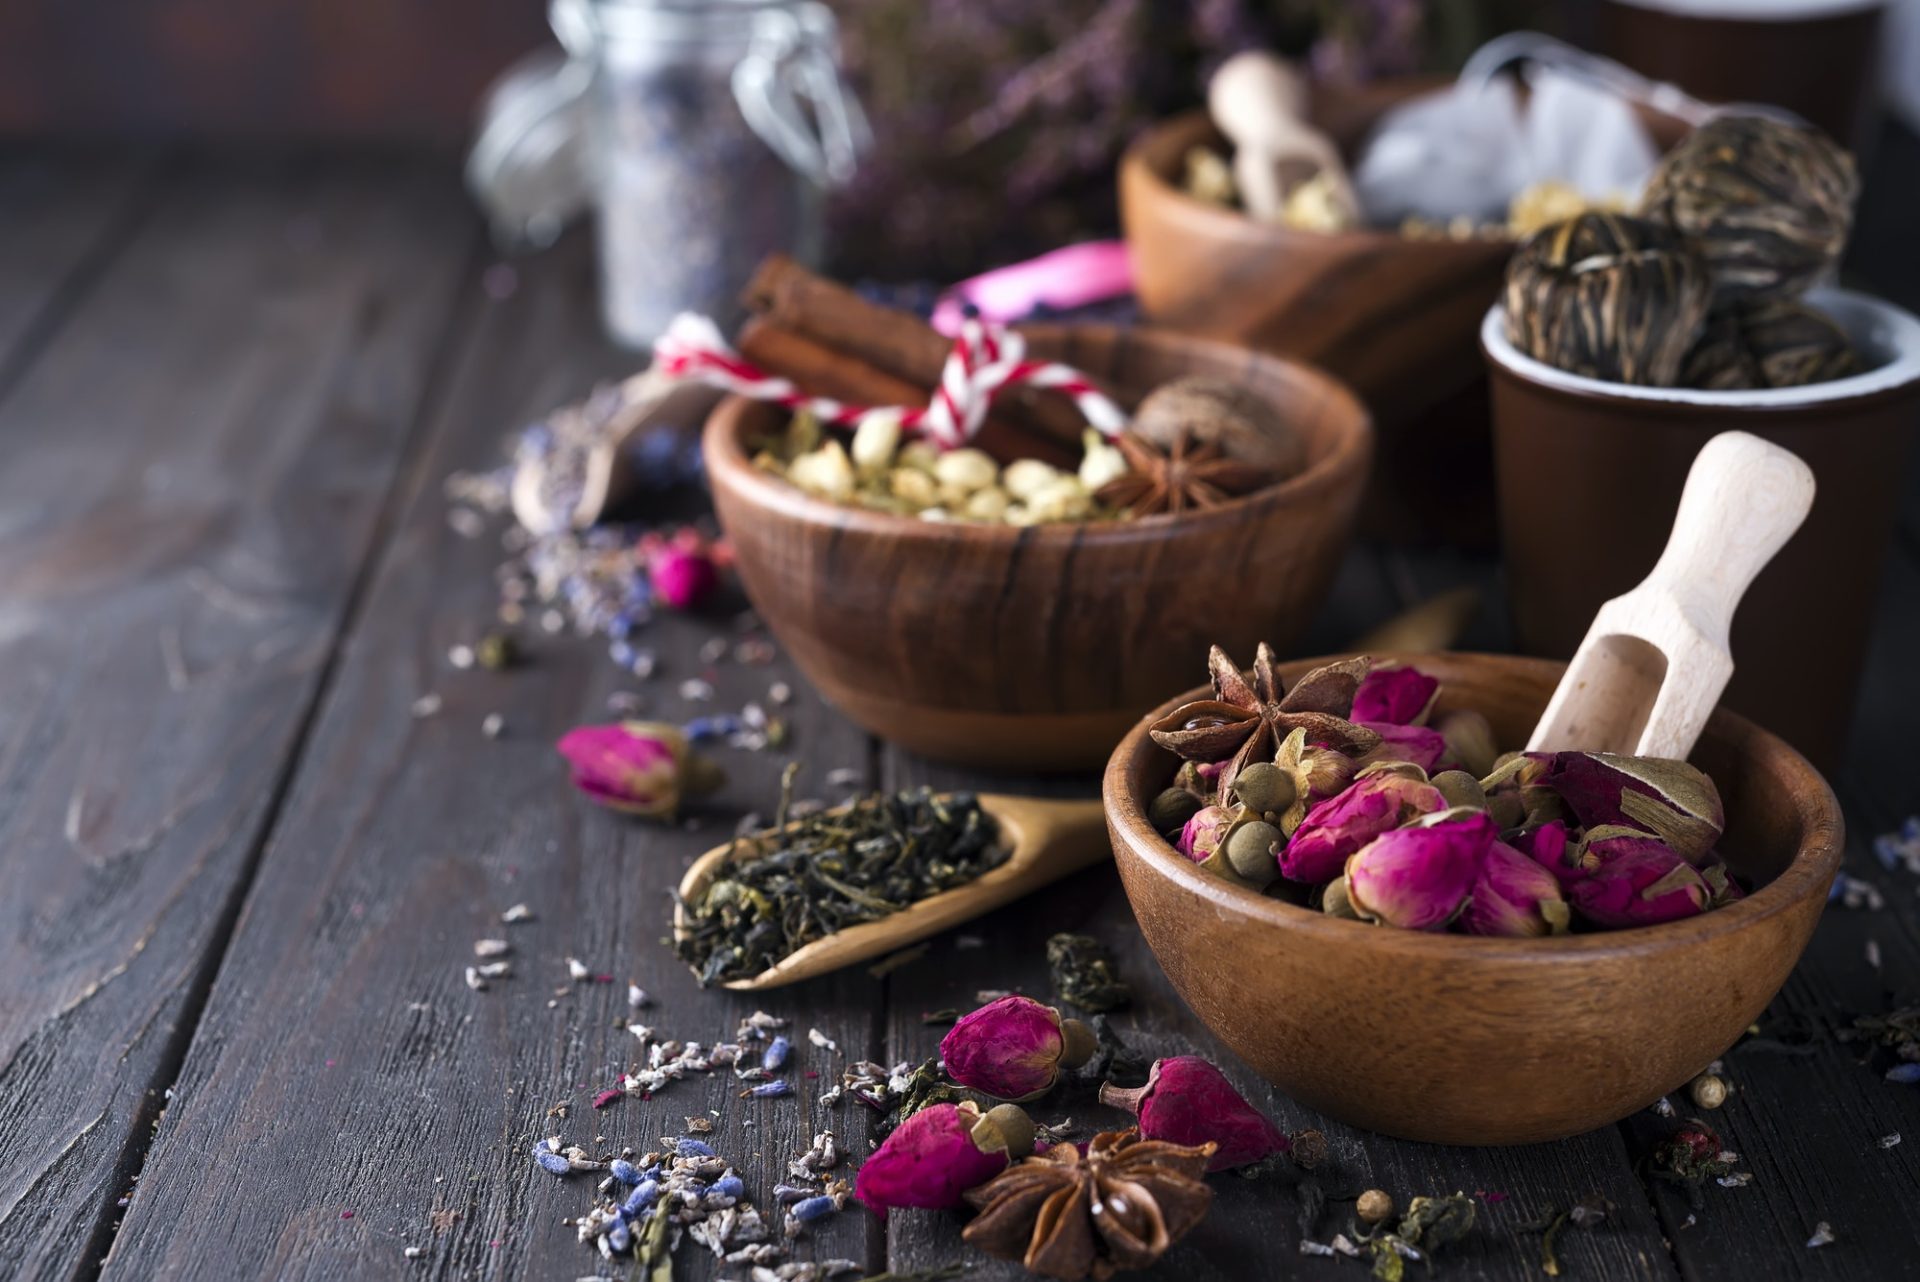 Flower and herbal tea